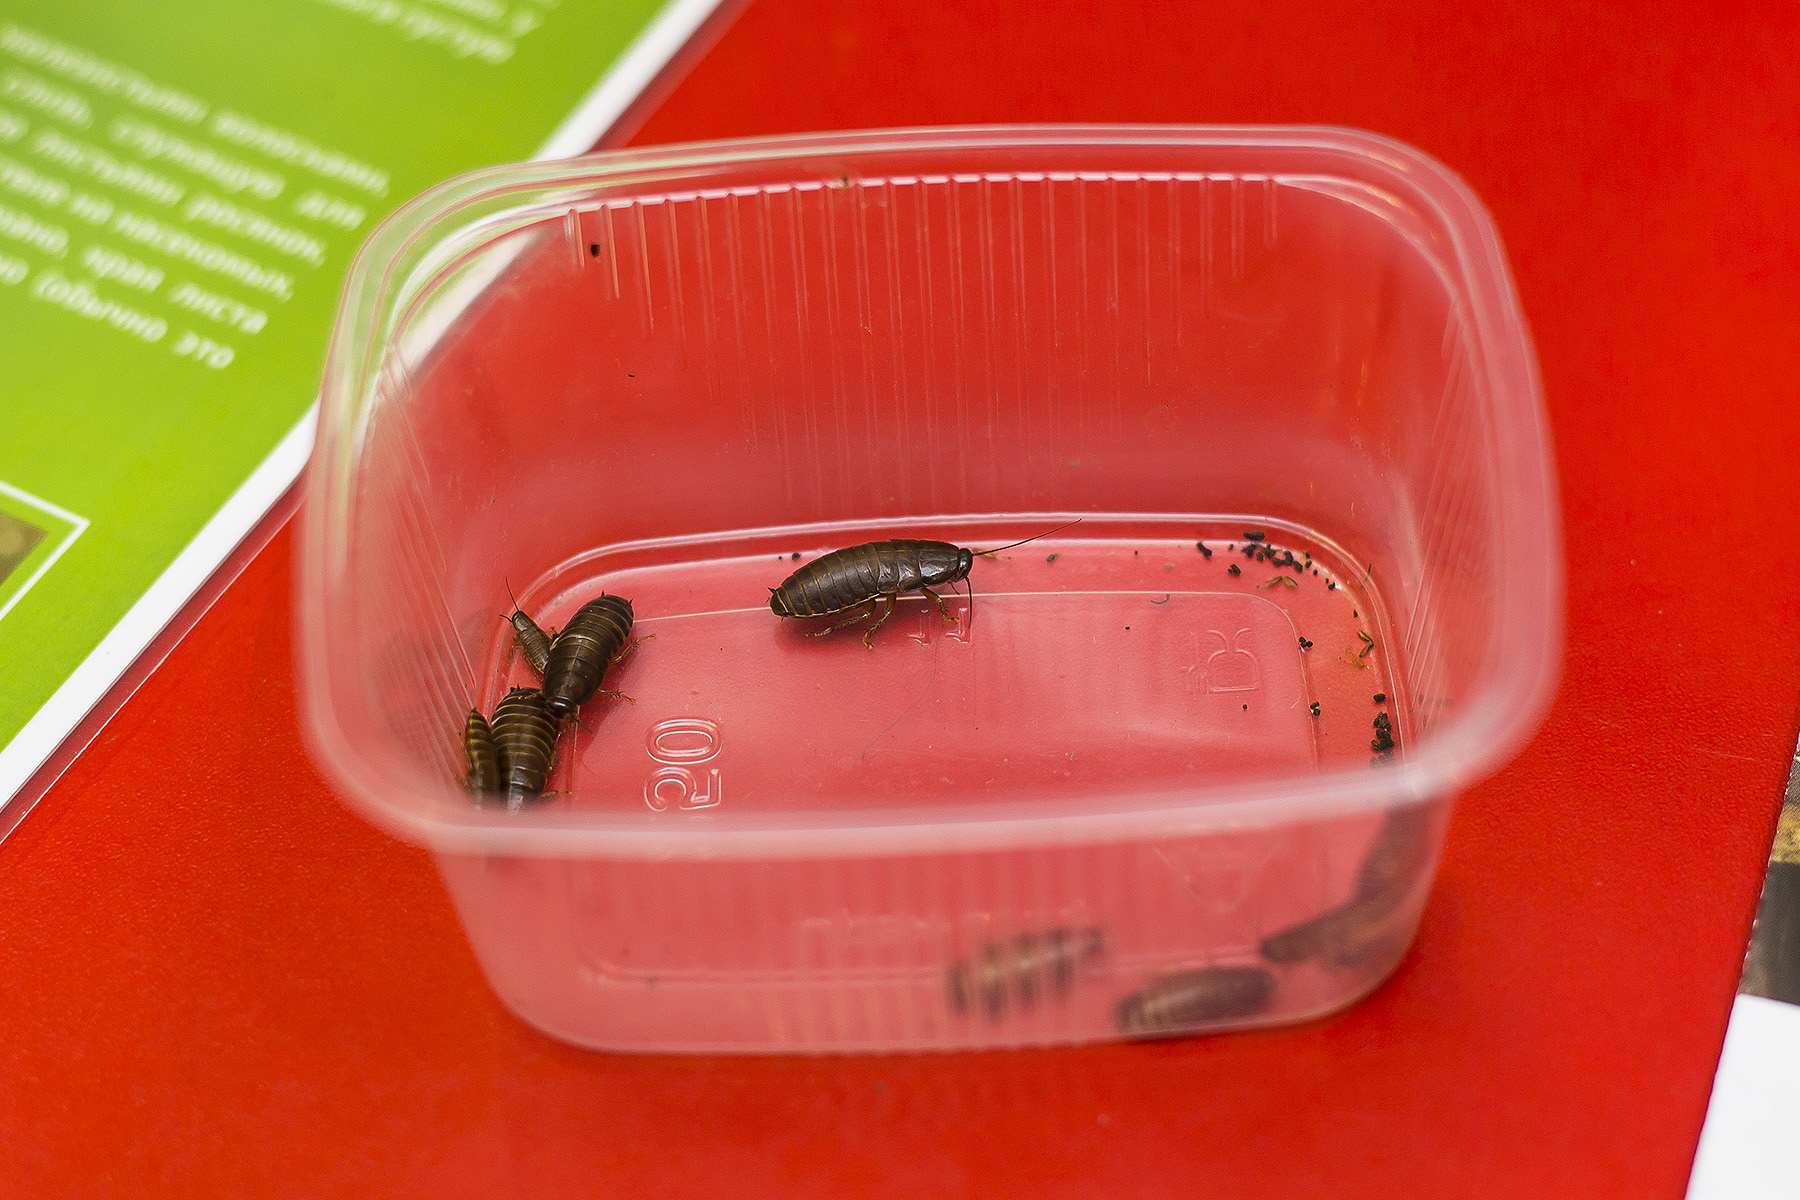 Для мухоловок жуки — не как пища для человека, а как удобрение